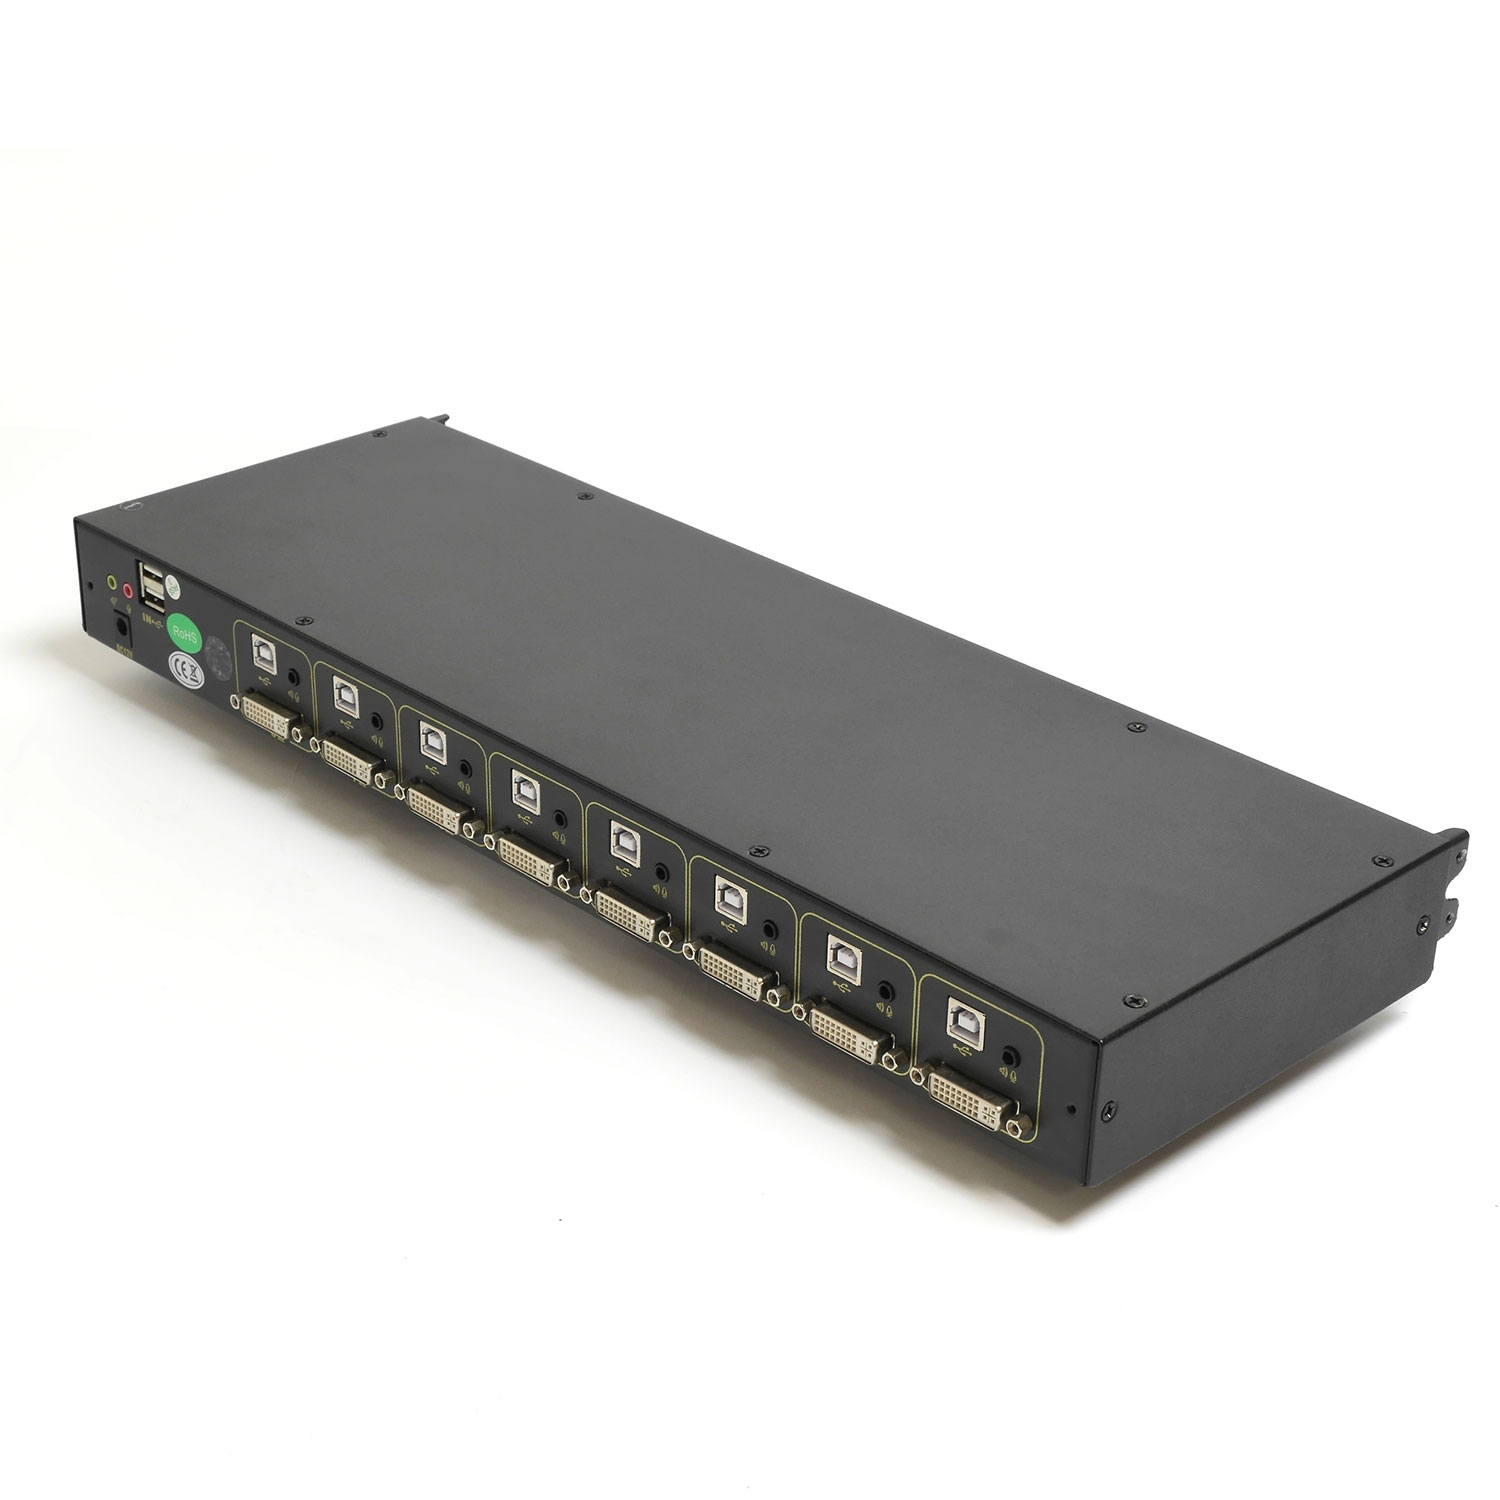 Модуль КВМ NR-M8D, 8 портов для консолей серии NR-MDR rev2.0, Negorack